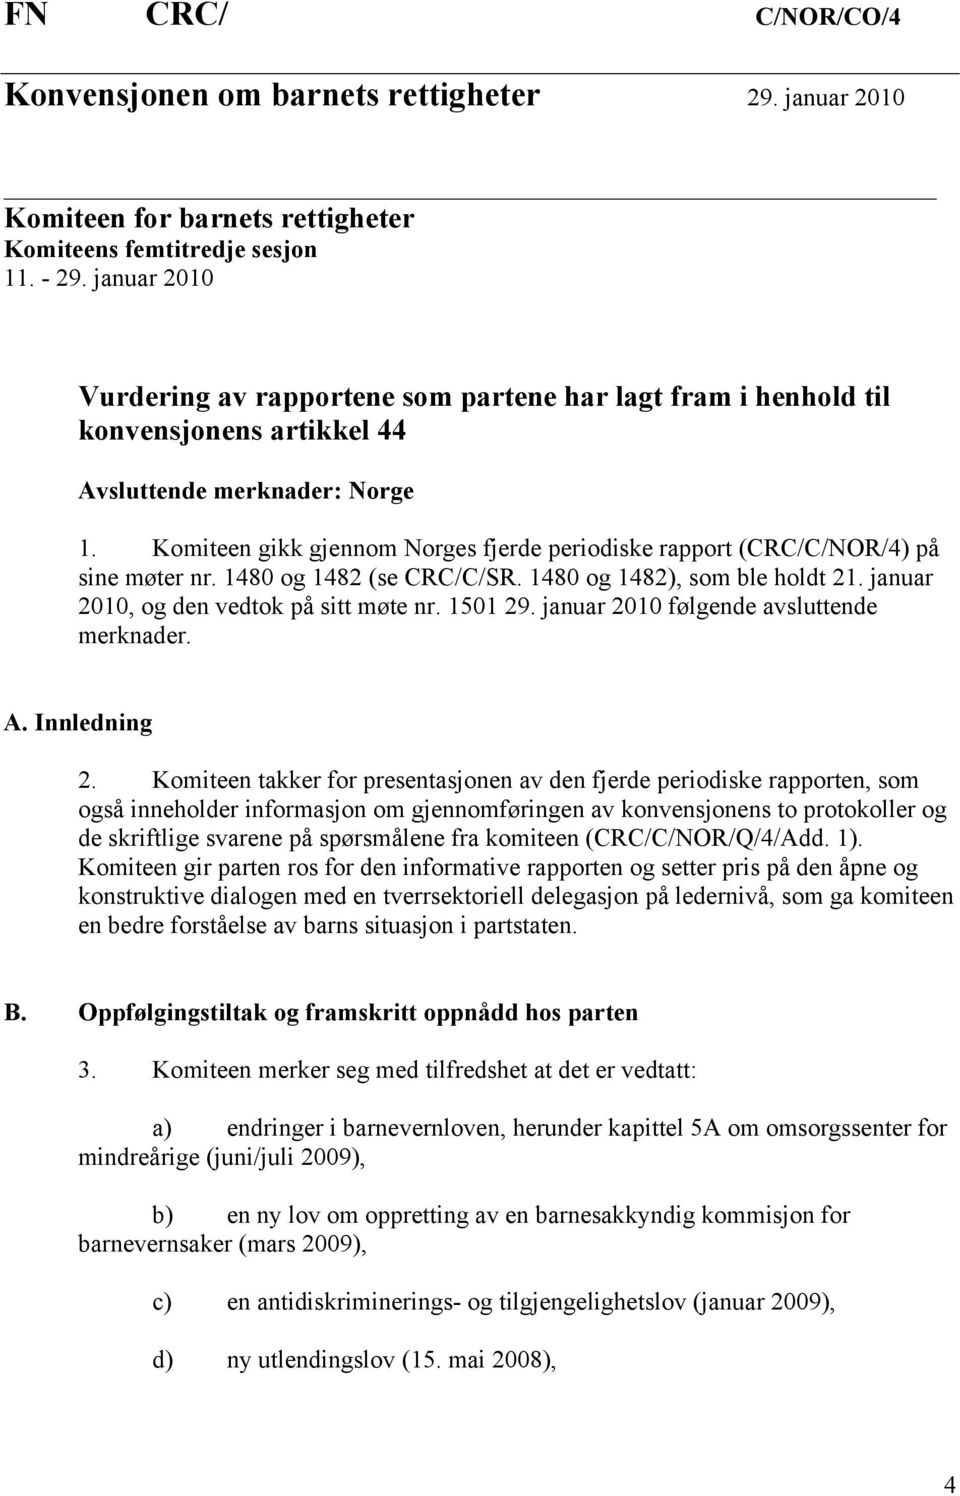 Komiteen gikk gjennom Norges fjerde periodiske rapport (CRC/C/NOR/4) på sine møter nr. 1480 og 1482 (se CRC/C/SR. 1480 og 1482), som ble holdt 21. januar 2010, og den vedtok på sitt møte nr. 1501 29.